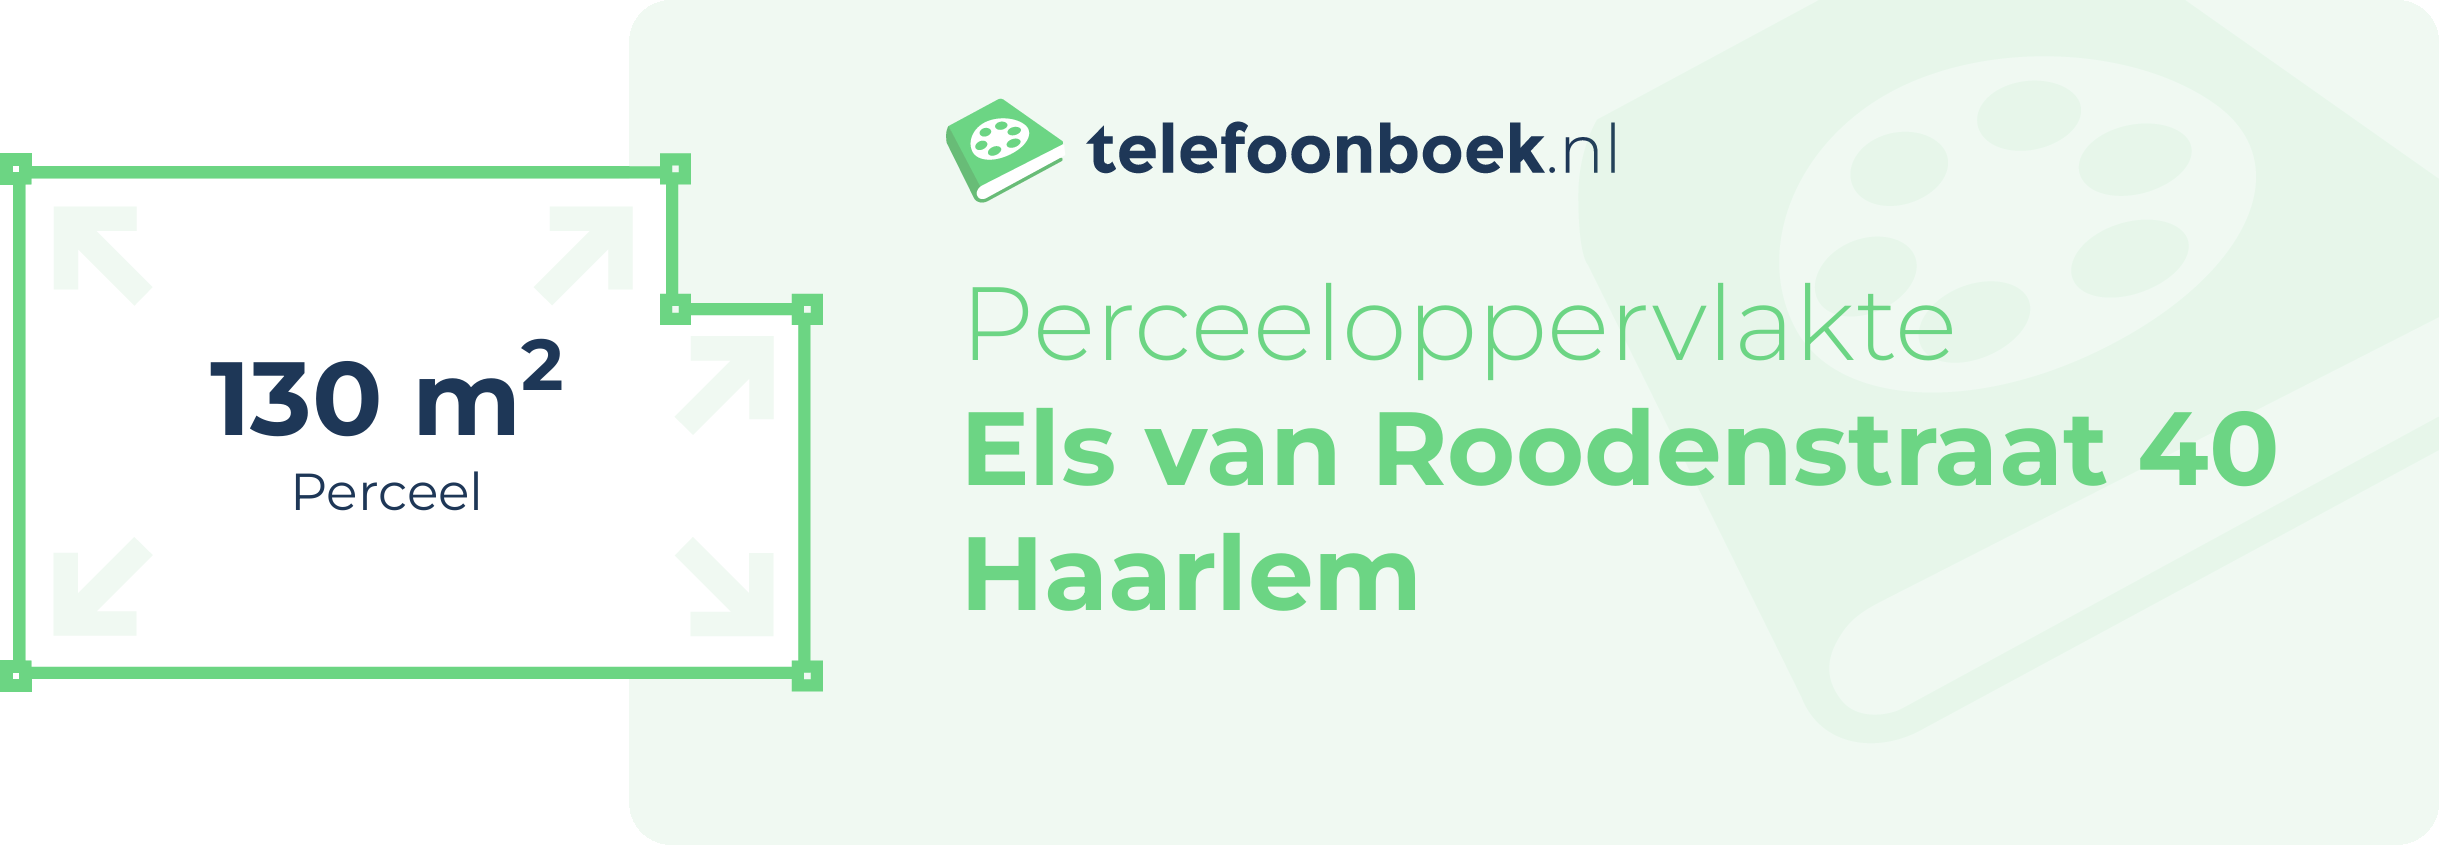 Perceeloppervlakte Els Van Roodenstraat 40 Haarlem